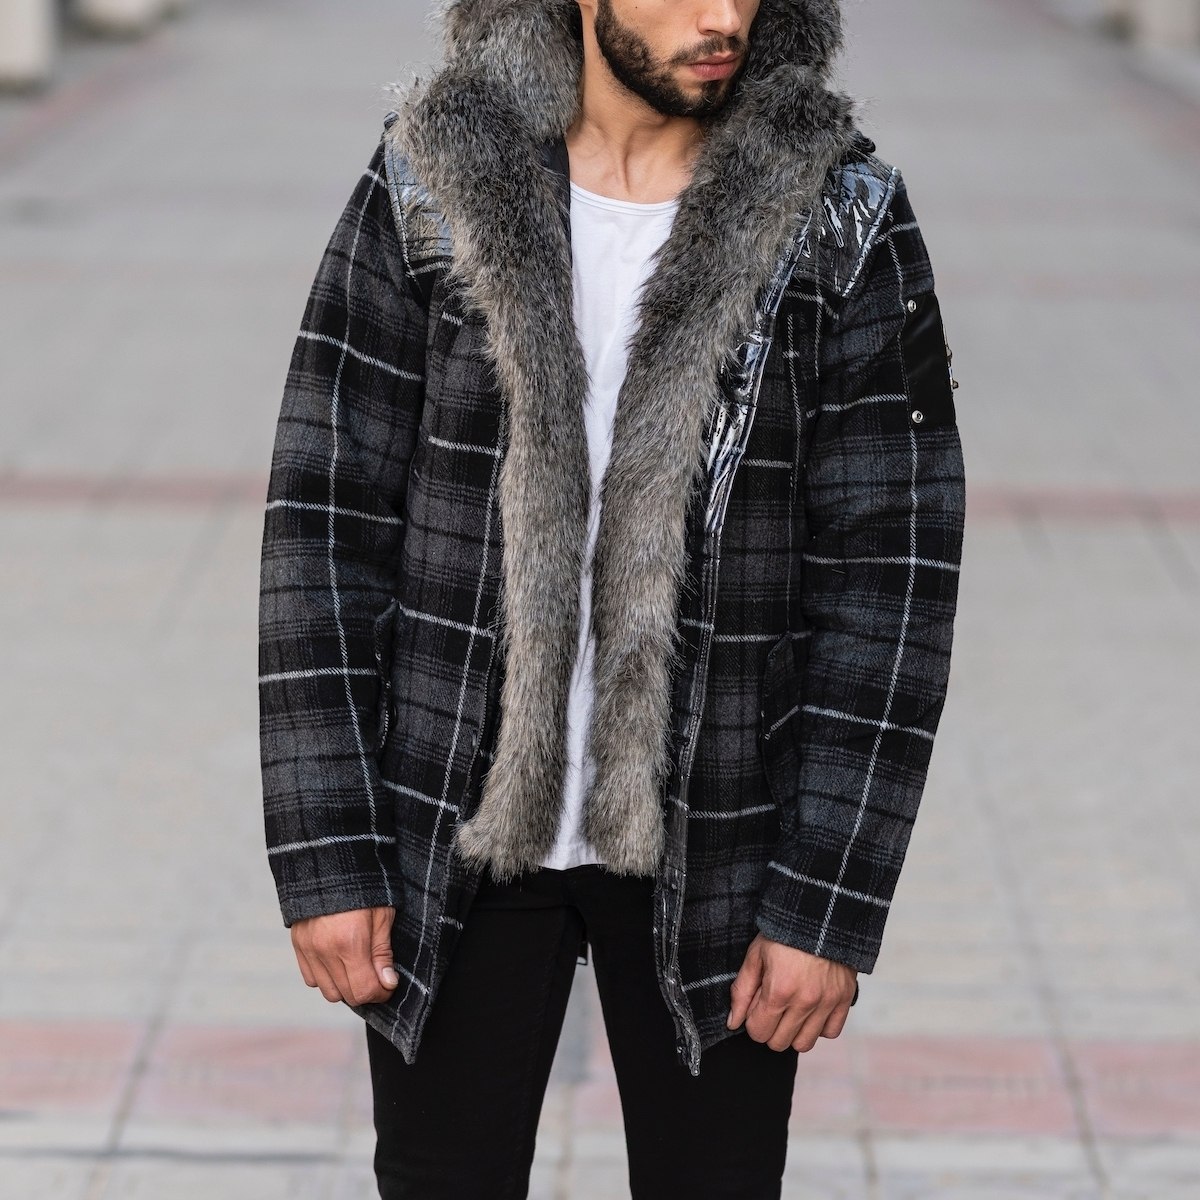 Furry Plaid Jacket With Hood - 1